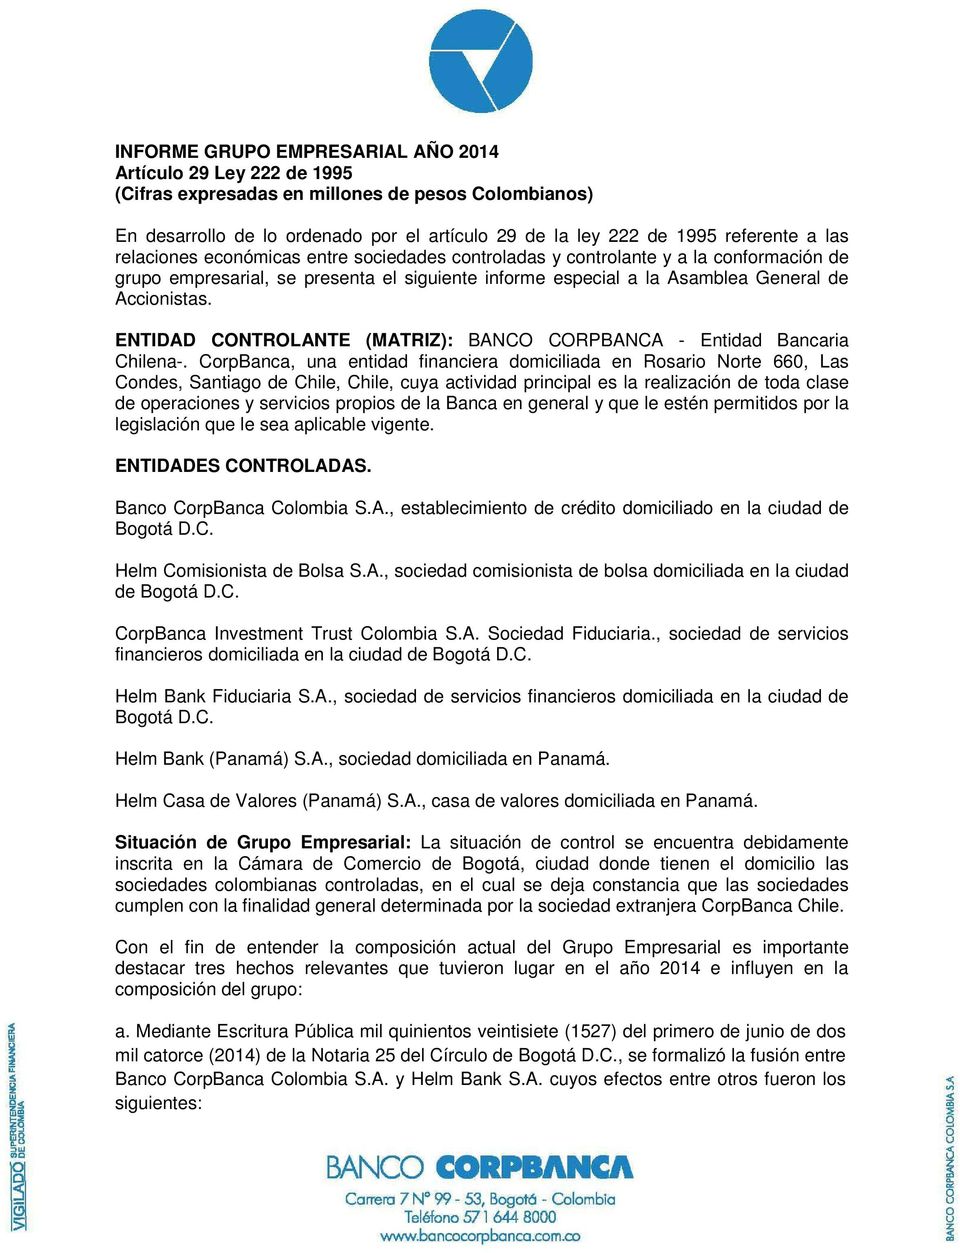 ENTIDAD CONTROLANTE (MATRIZ): BANCO CORPBANCA - Entidad Bancaria Chilena-.